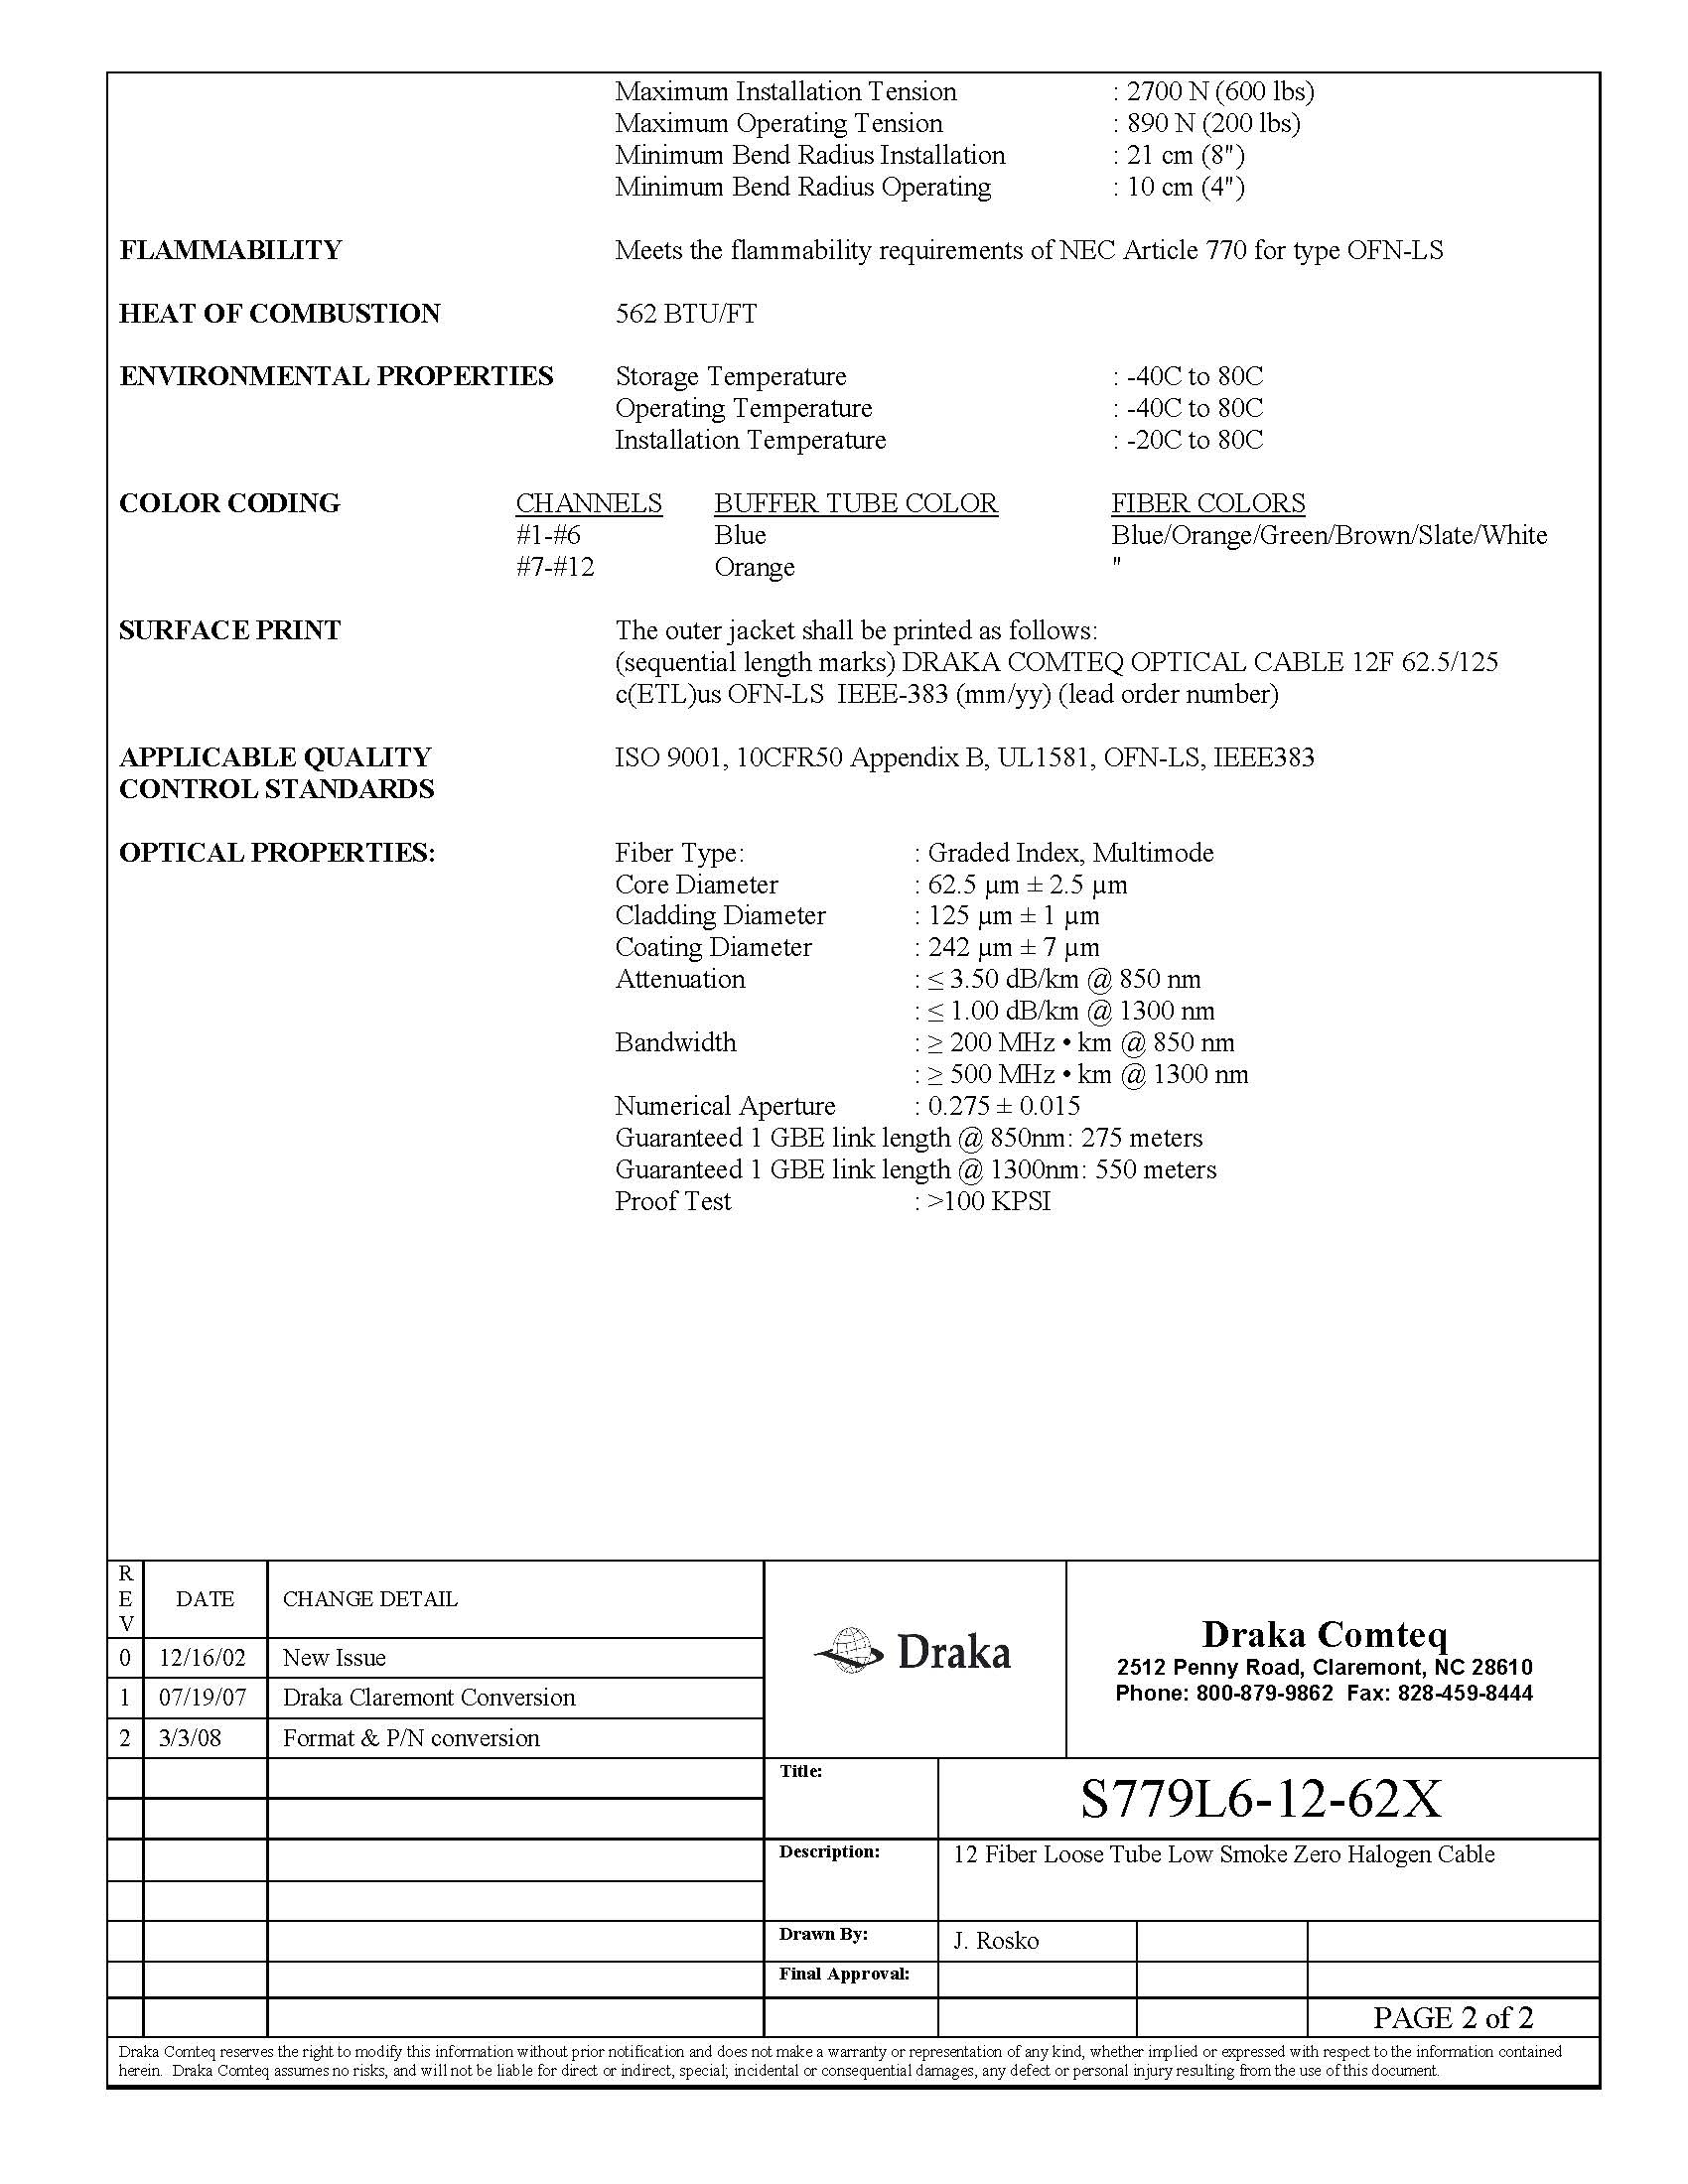 DRAKA COMTEQ S779L6-12-62X SPEC PAGE 2